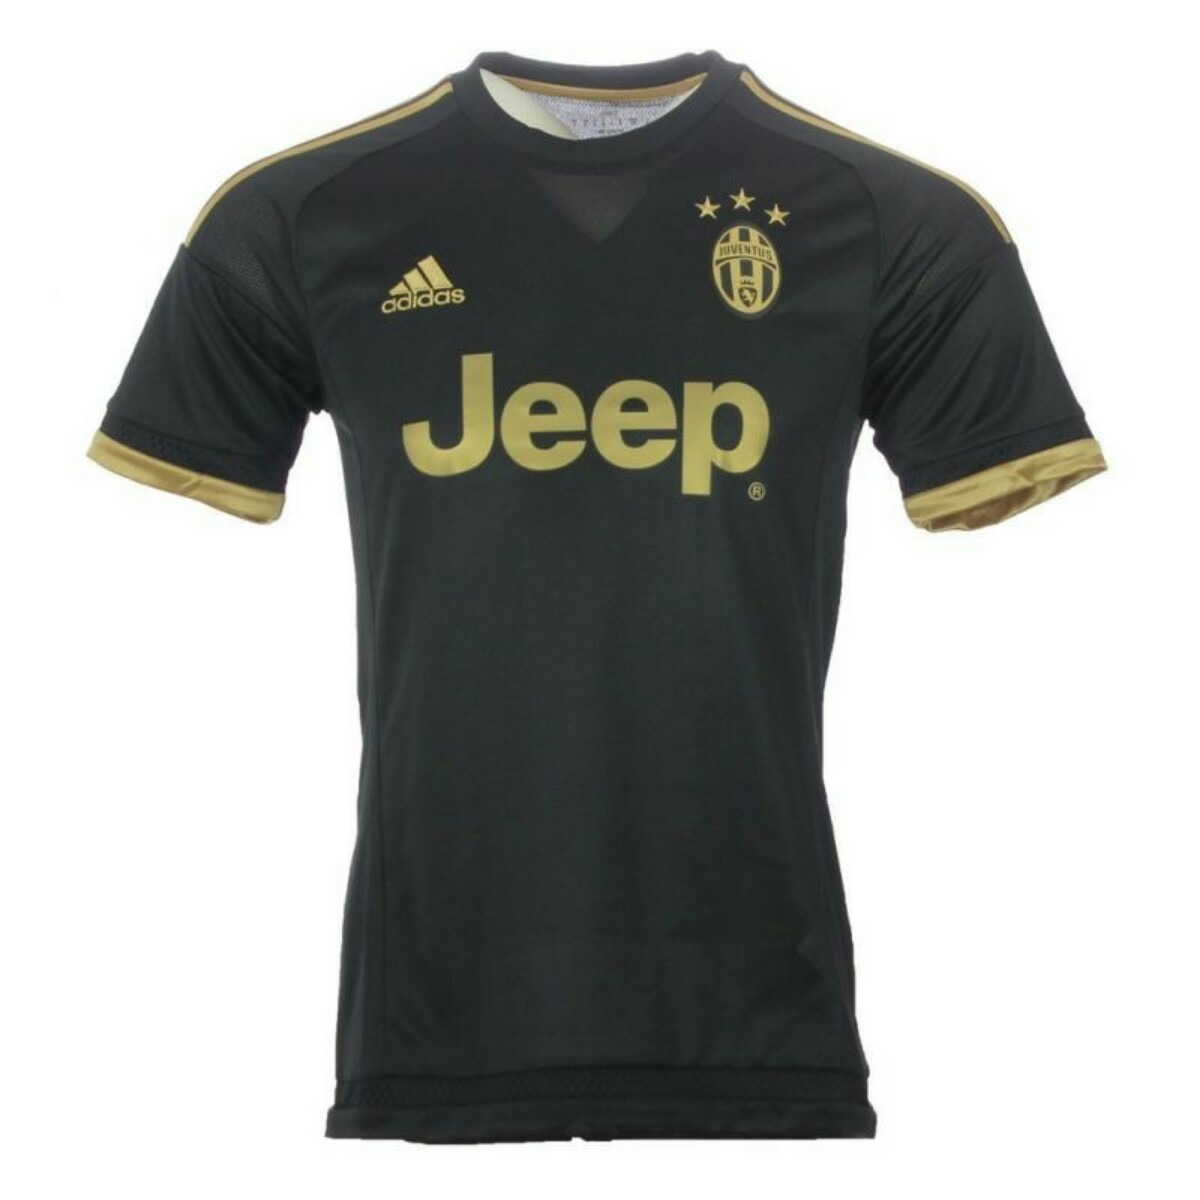 Camiseta Original Juventus Turin Negra Dorada Talla S Adi - S/ 200,00 en Mercado Libre